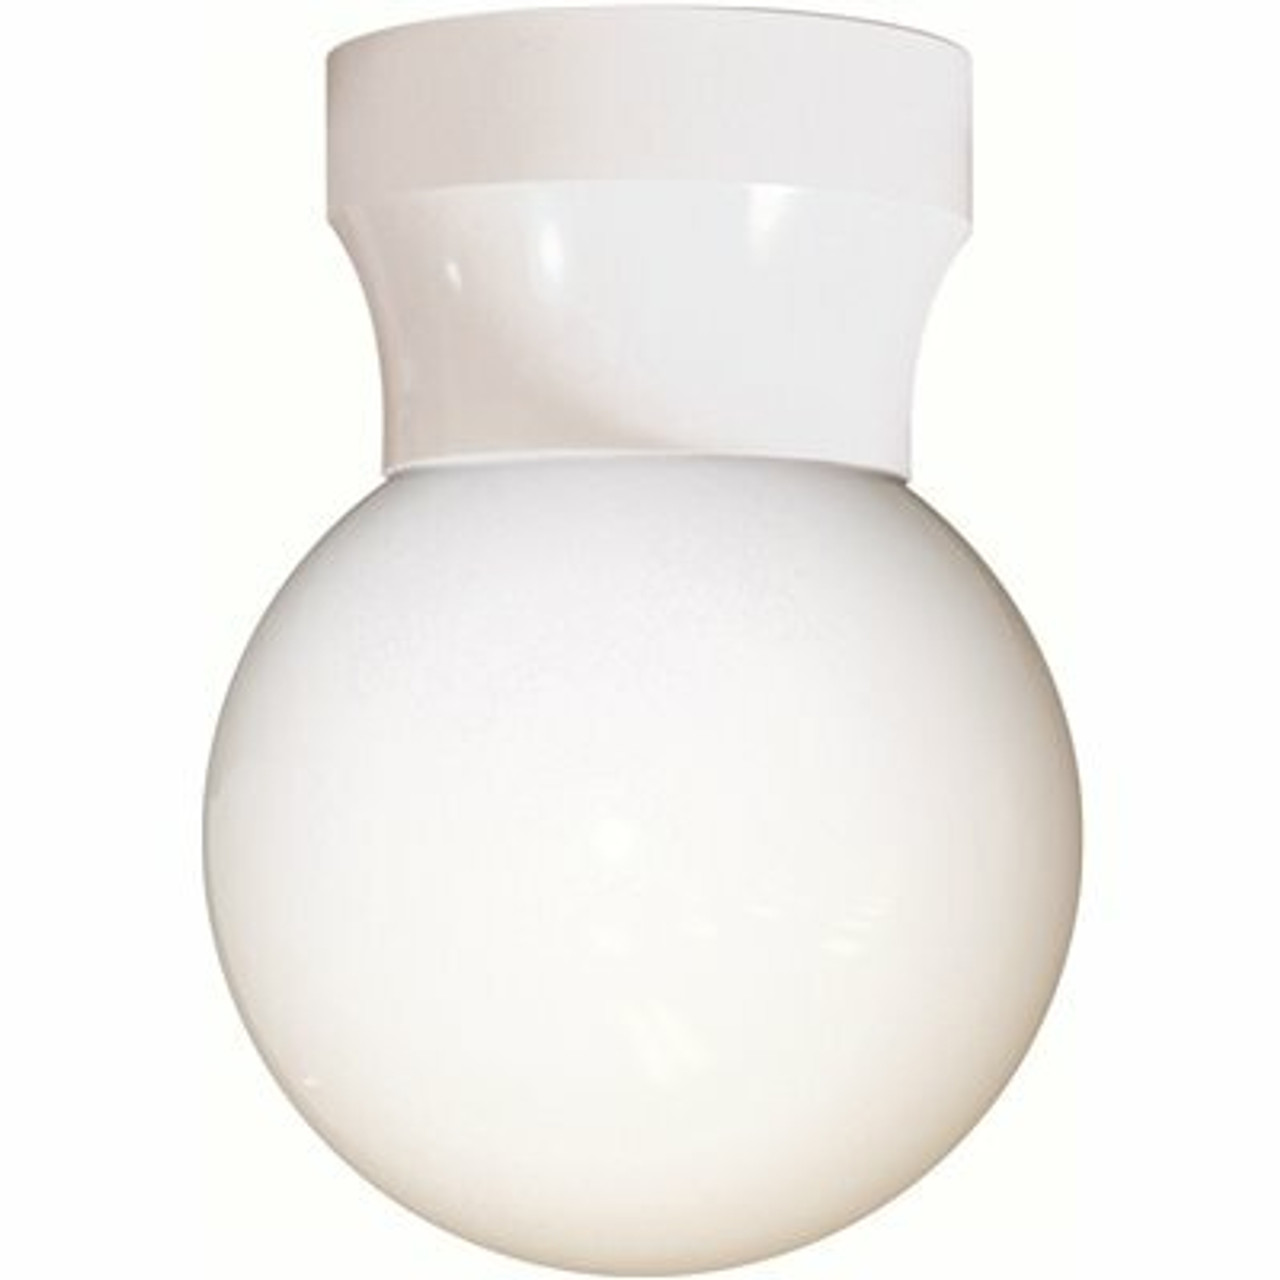 Liteco White Screw Neck Outdoor Flush Mount Ceiling Pocket Globe Lantern